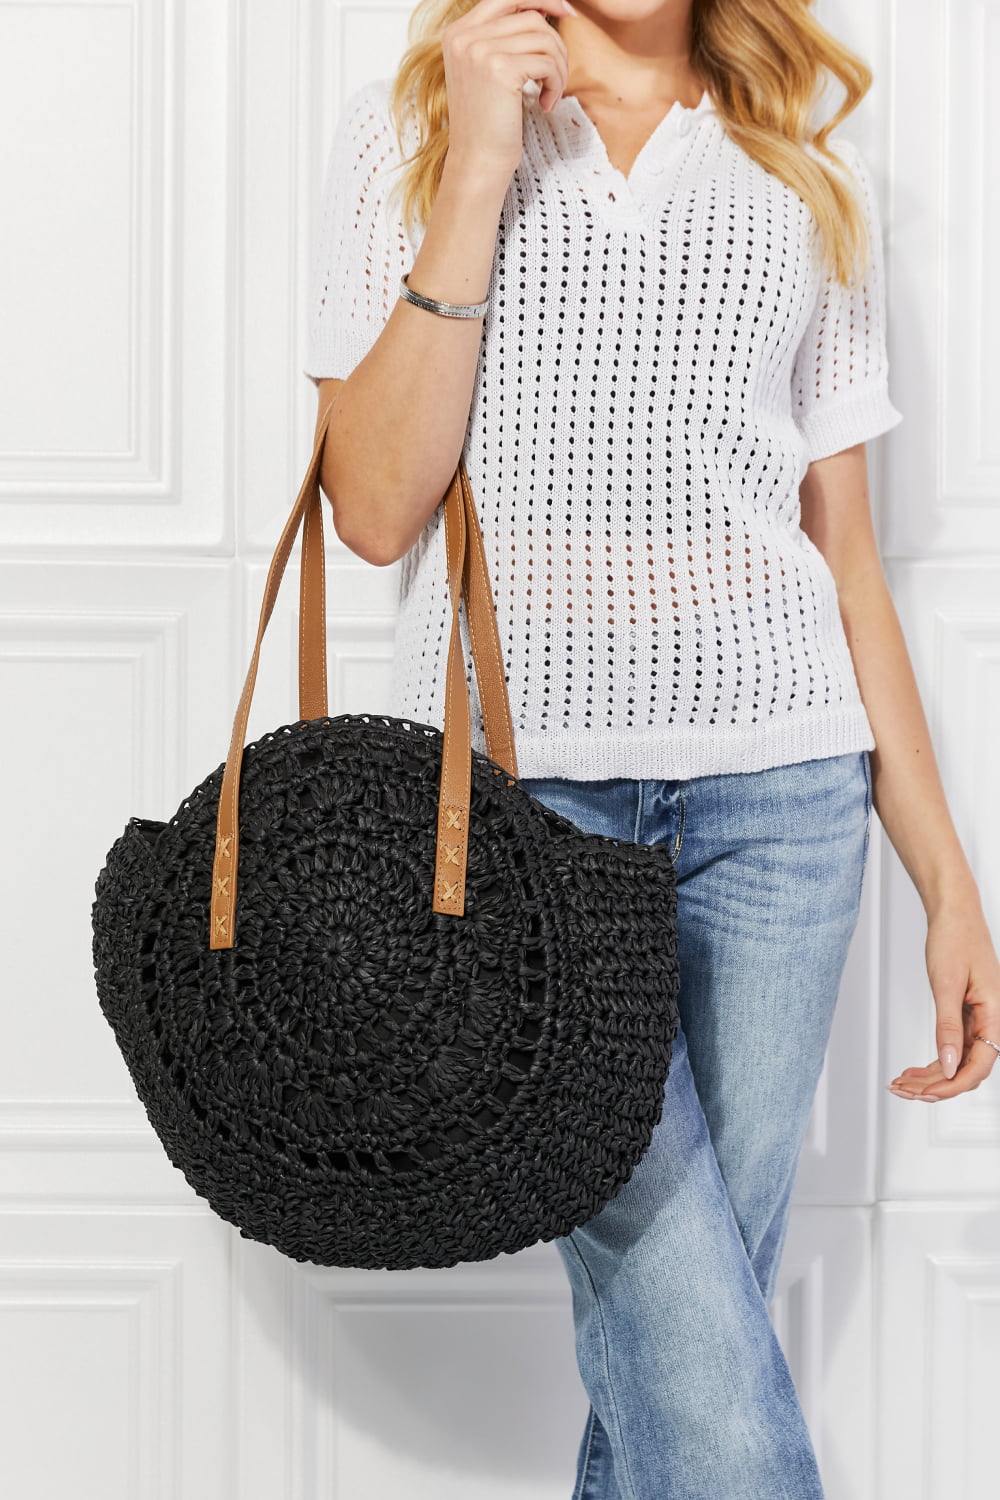 Black Crochet Handbag